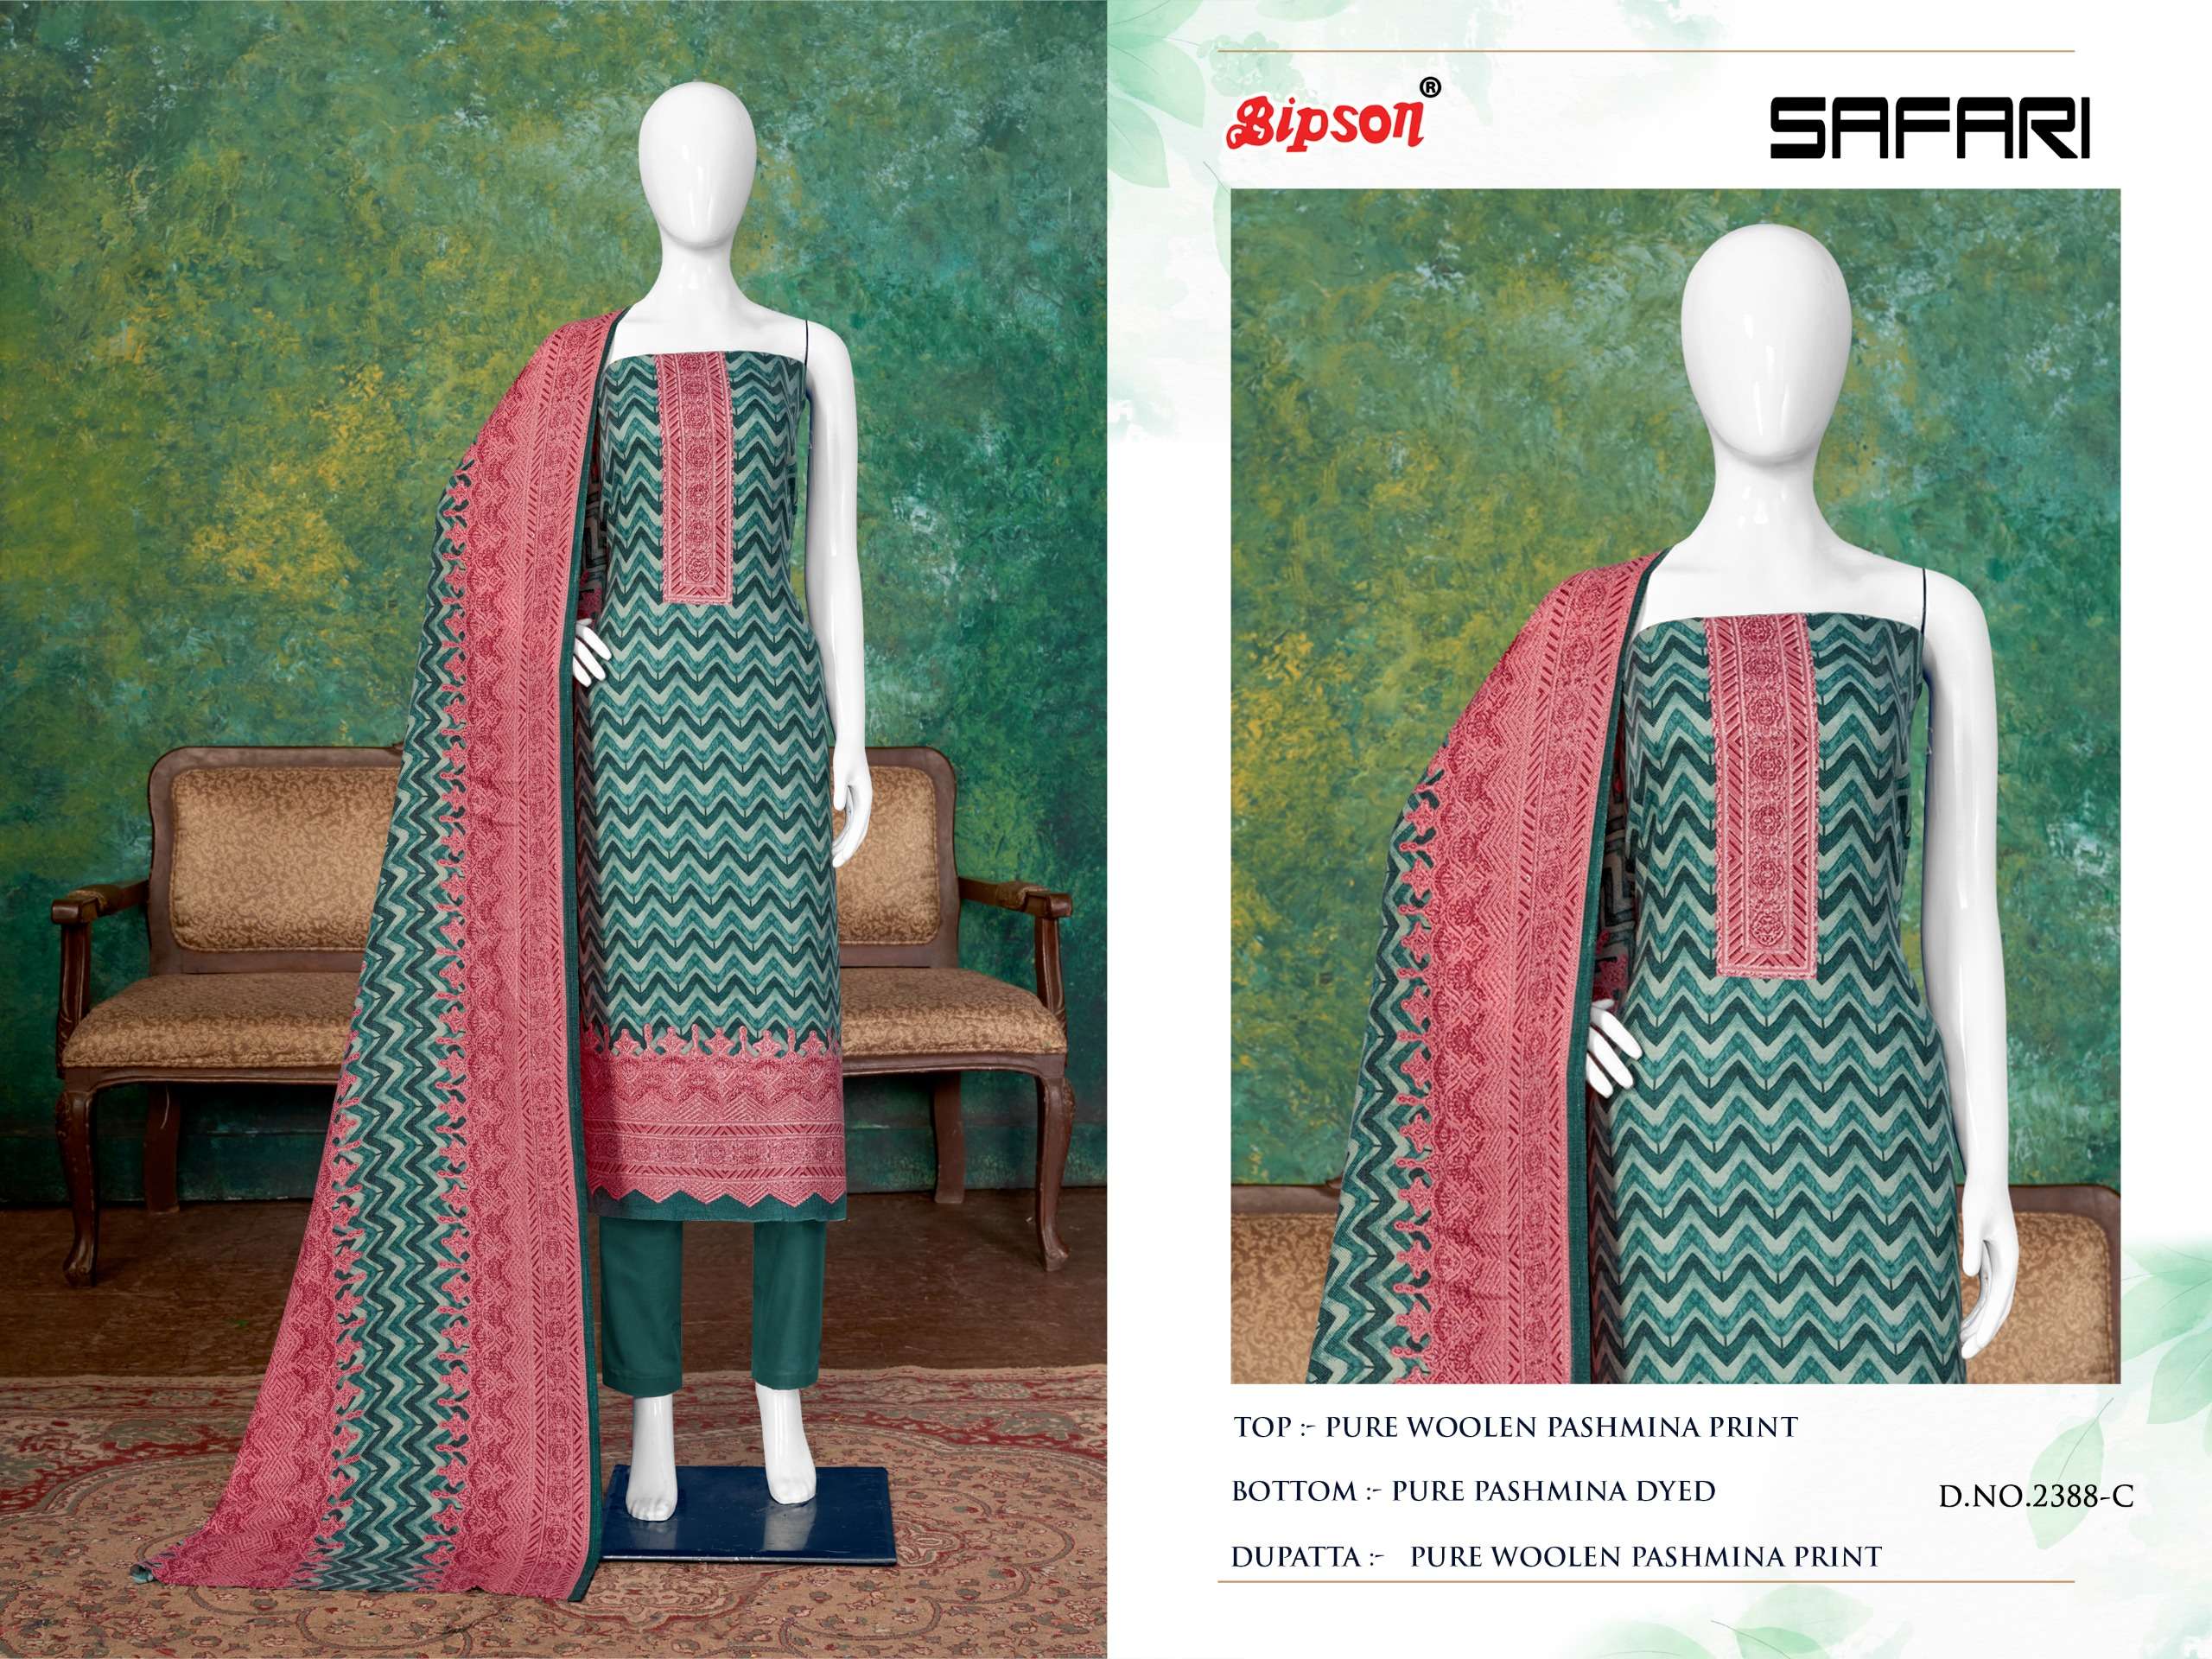 bipson safari 2388 woollen pashmin exclusive look salwar suit catalog